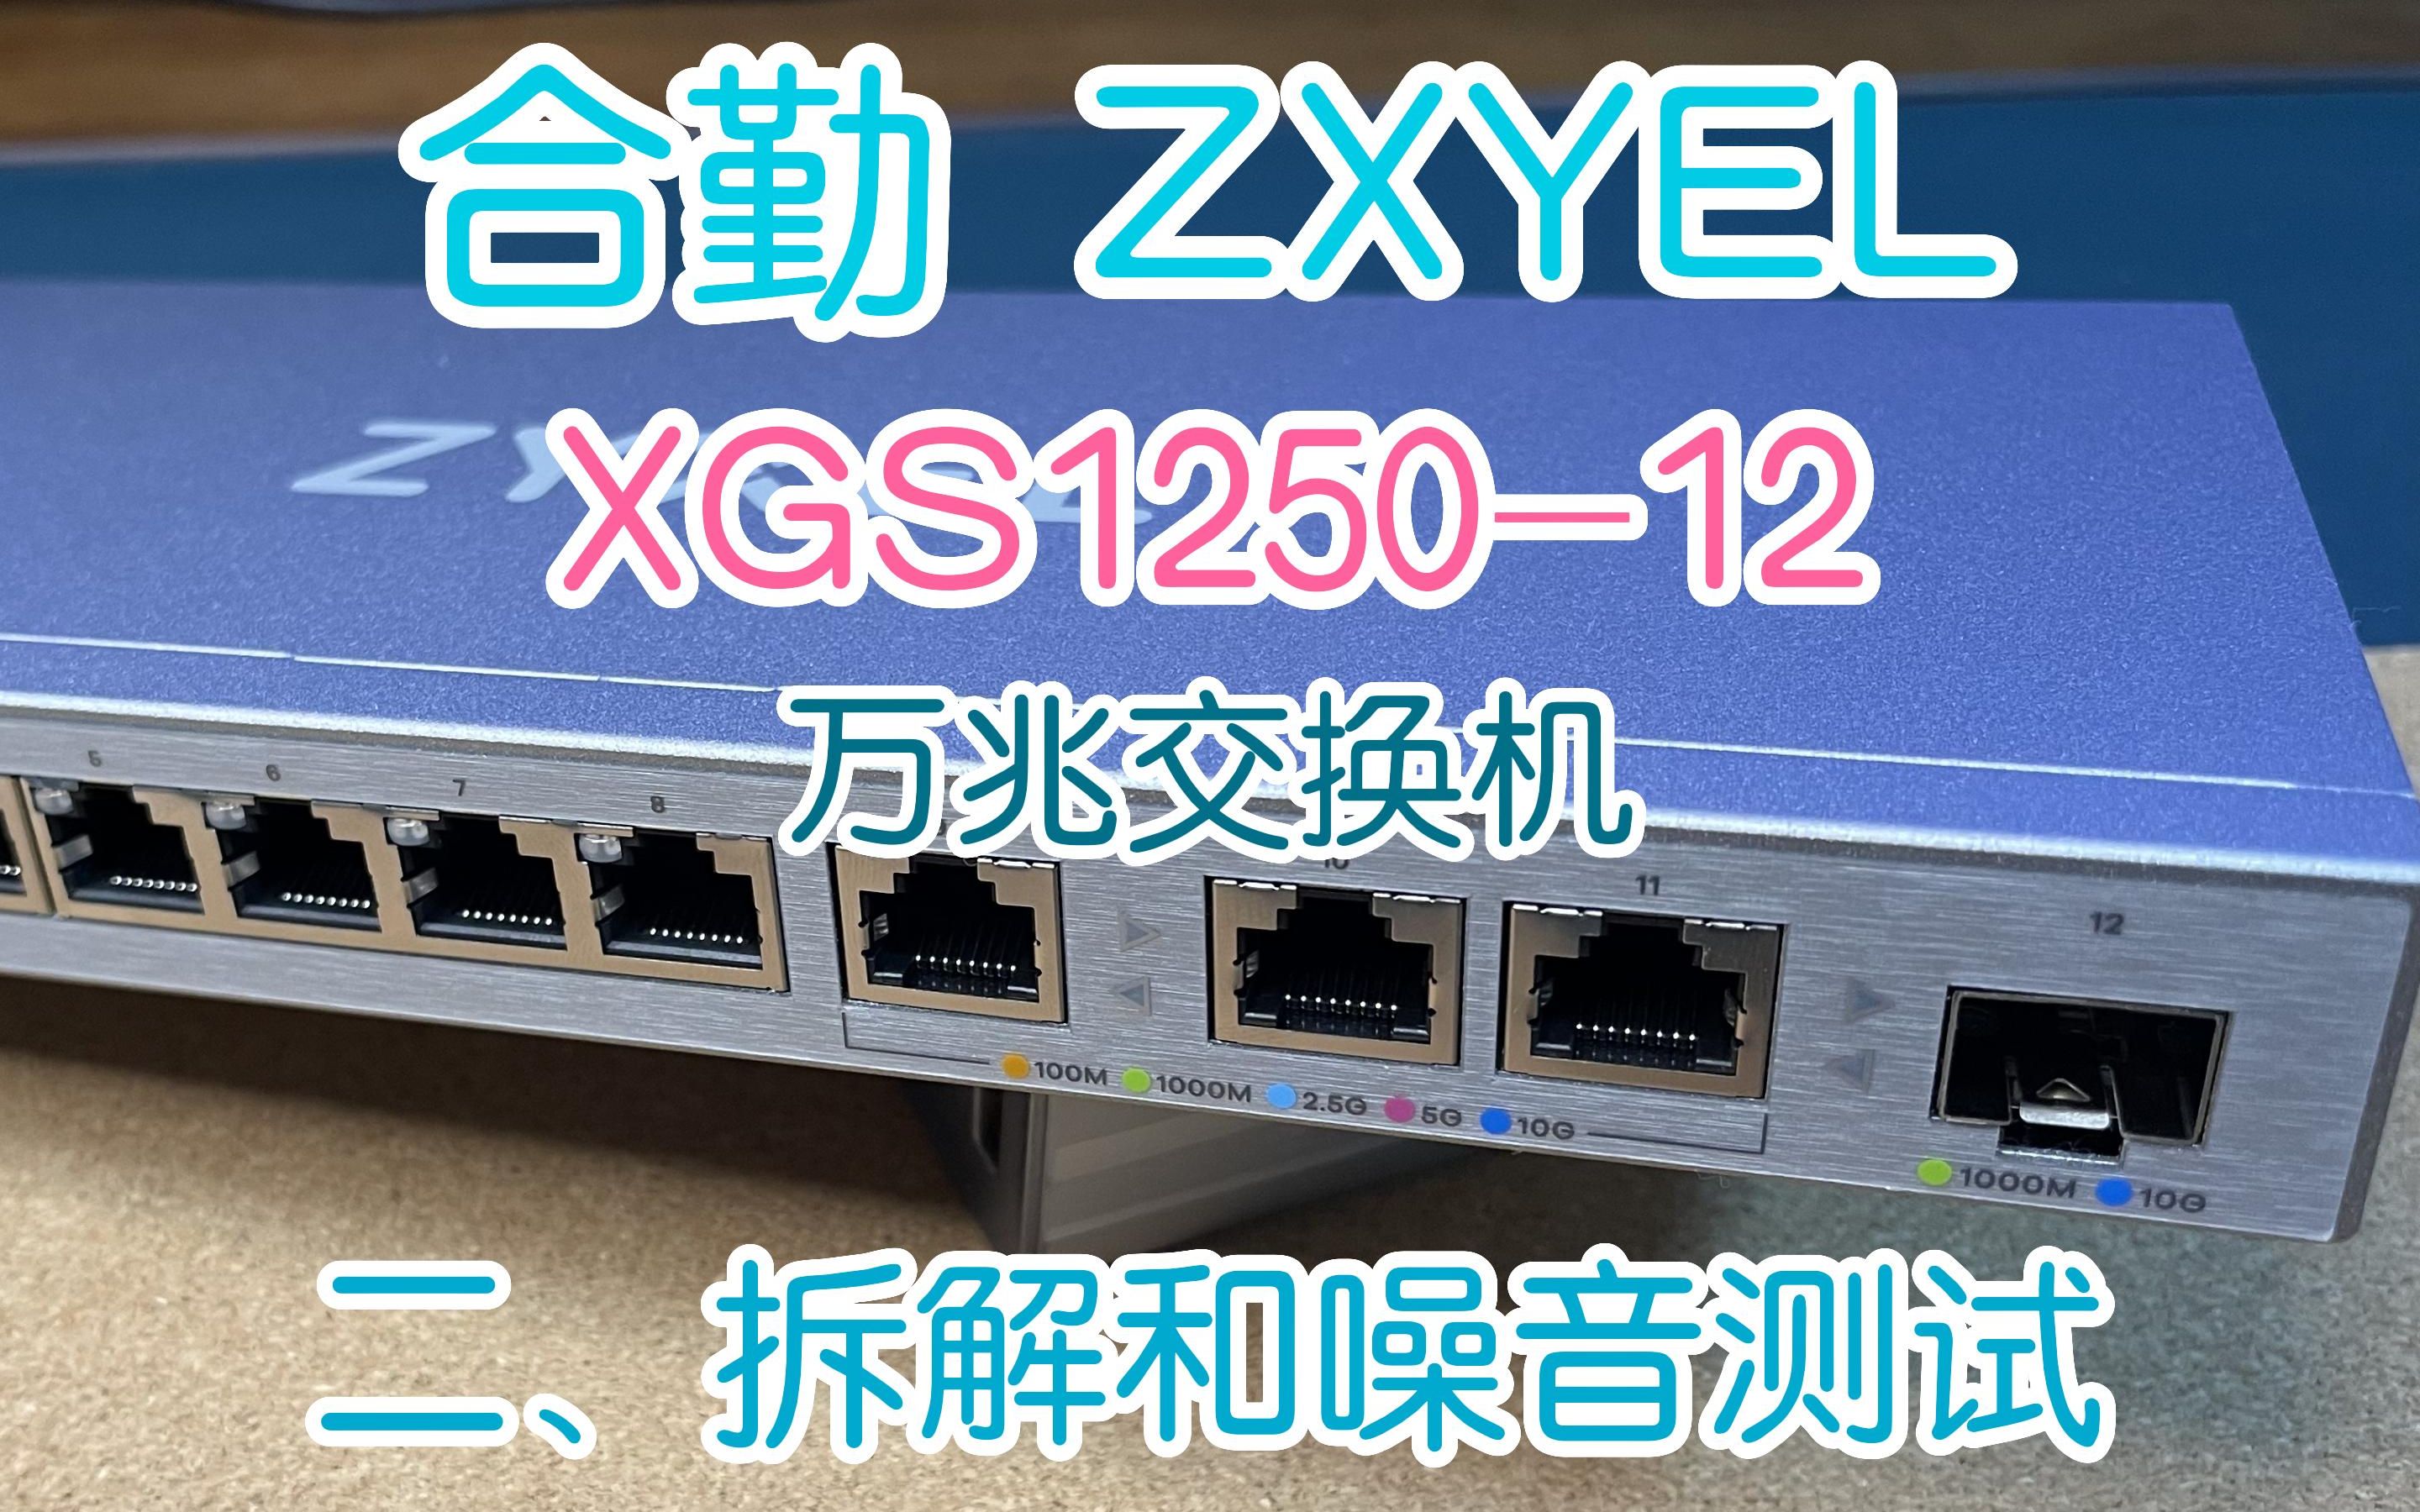 “0噪音”的万兆交换机，了解一下？#合勤交换机 ZYXEL XGS1250-12 拆解以及噪音测试